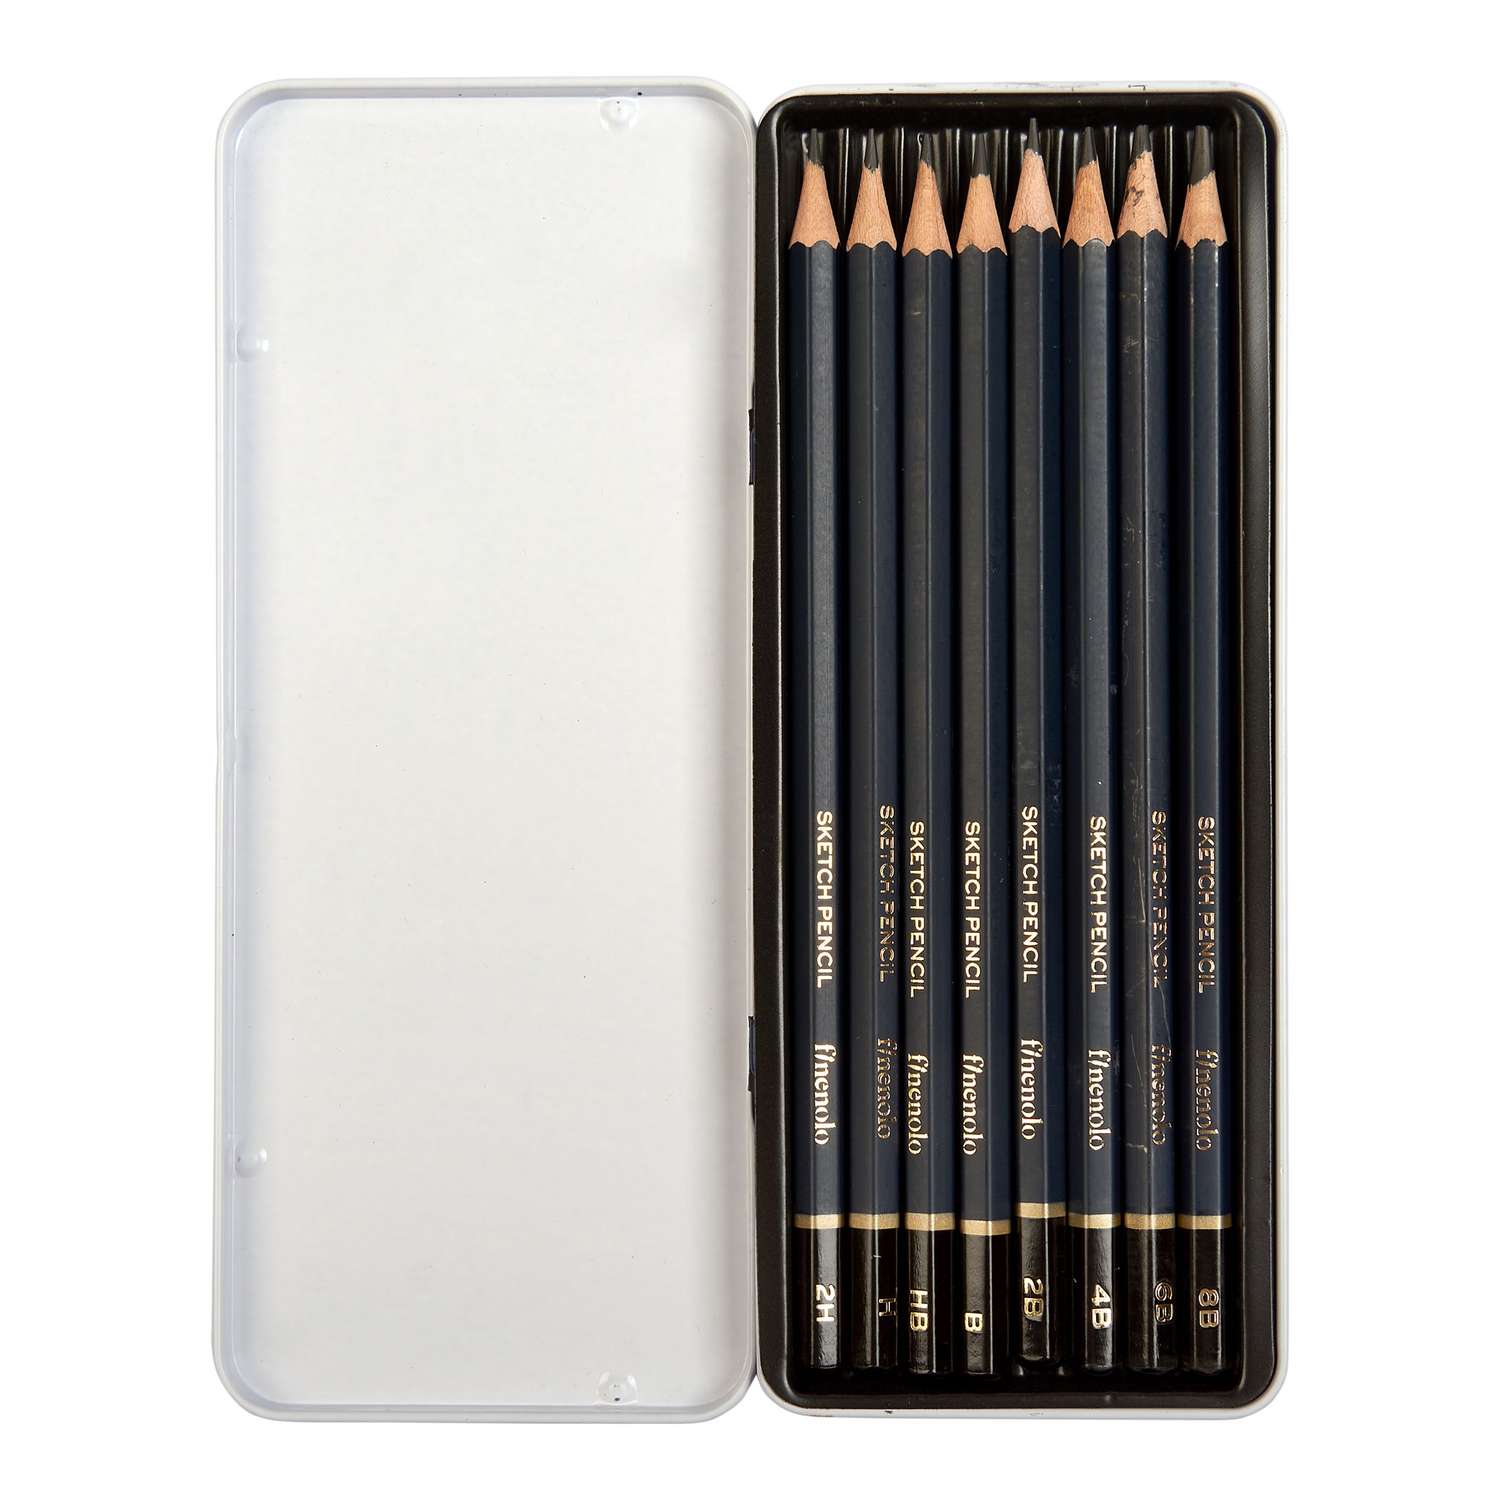 Чернографитные карандаши Finenolo Sketch 8 штук (8B-2H) в металлическом пенале - фото 2